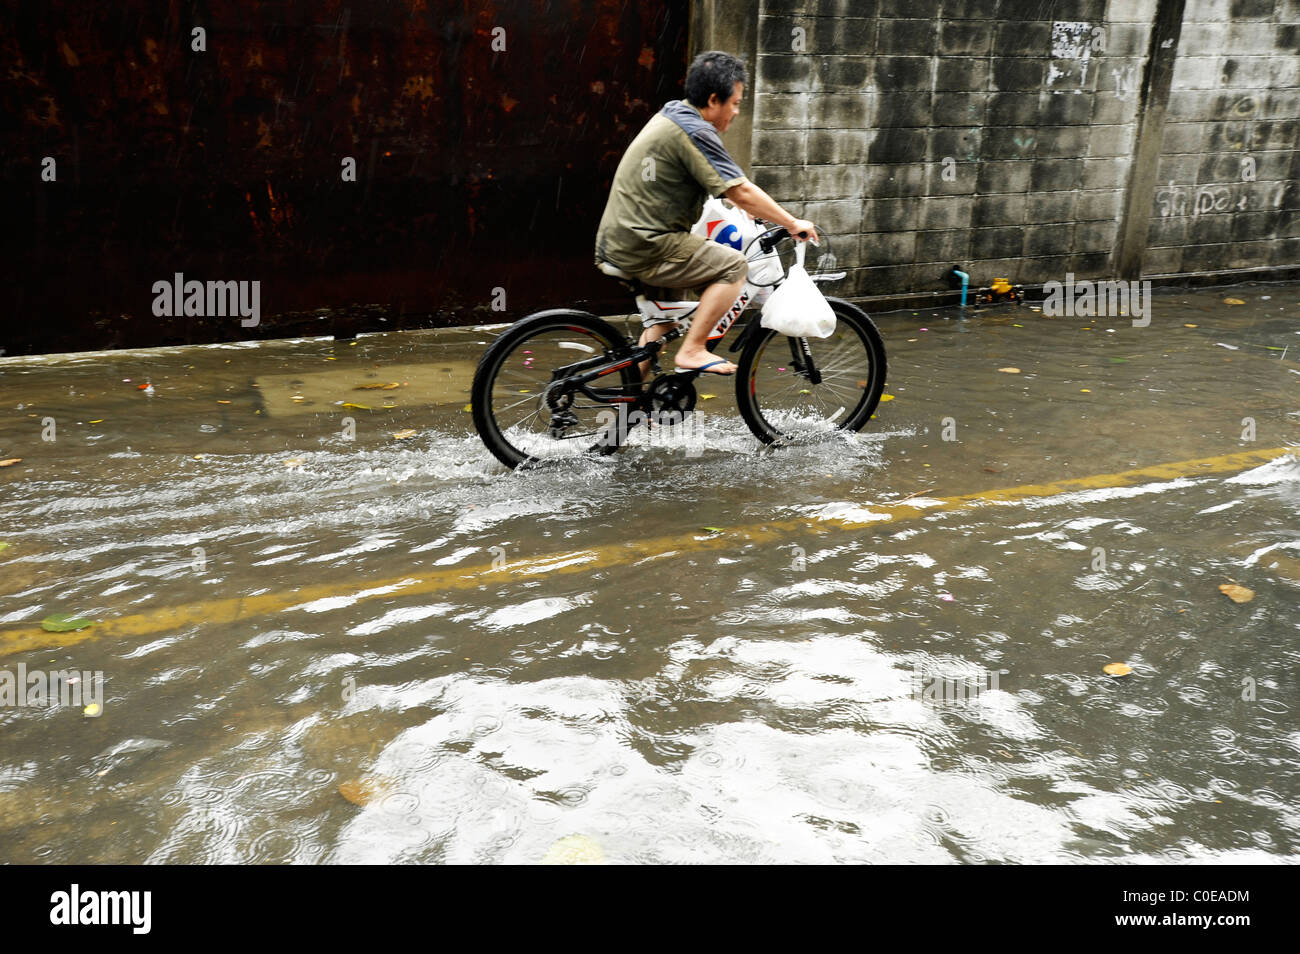 Un jour de pluie à Bangkok ( rue inondée fou), la vie quotidienne dans le grand mango, étrange situation météo Banque D'Images